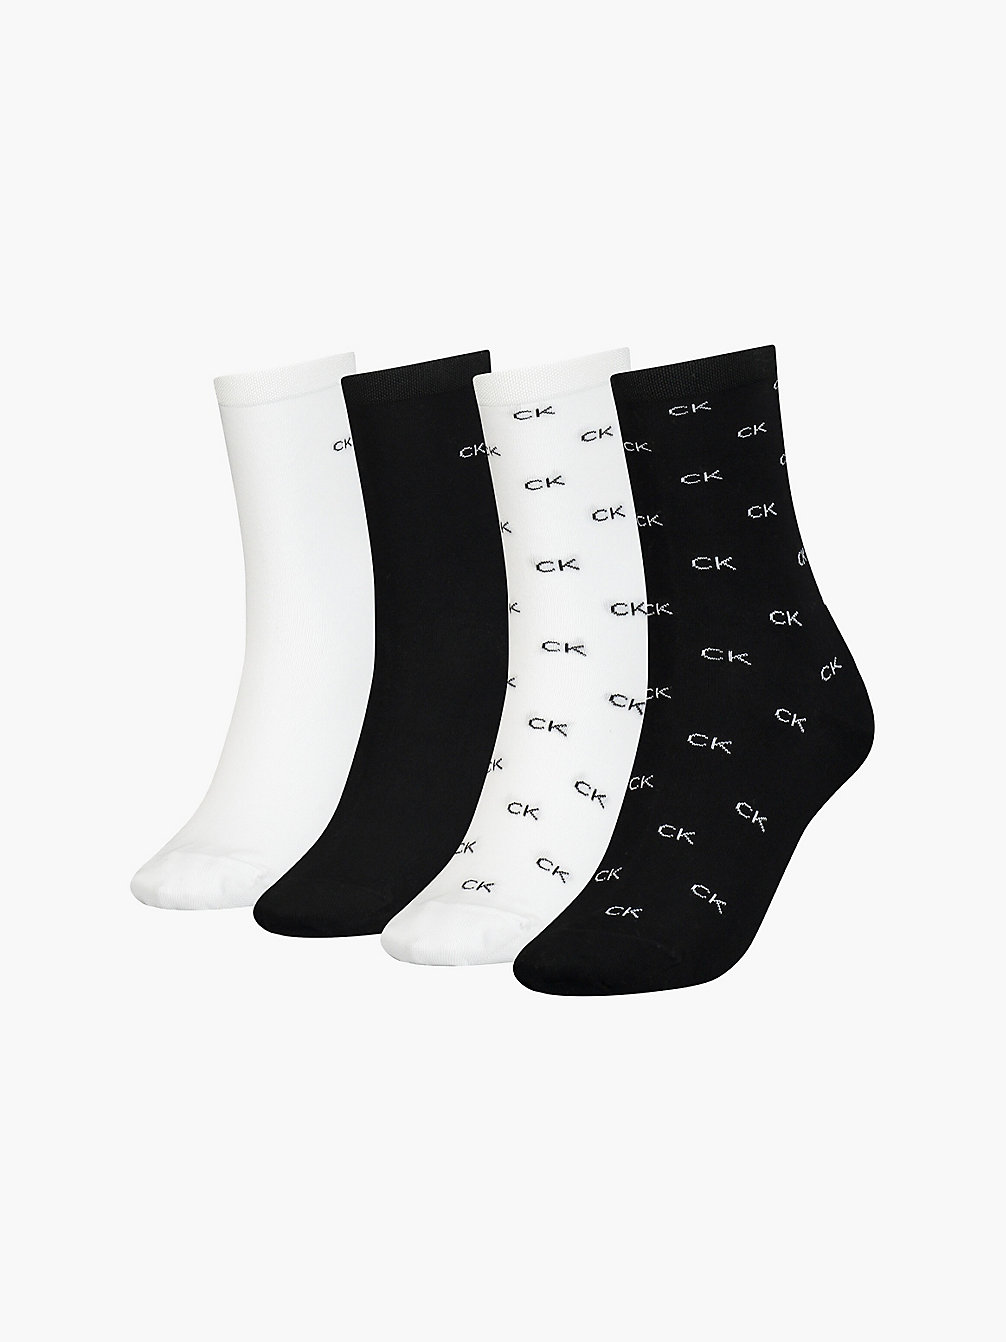 BLACK COMBO 4 Pack Crew Socks Gift Set undefined women Calvin Klein